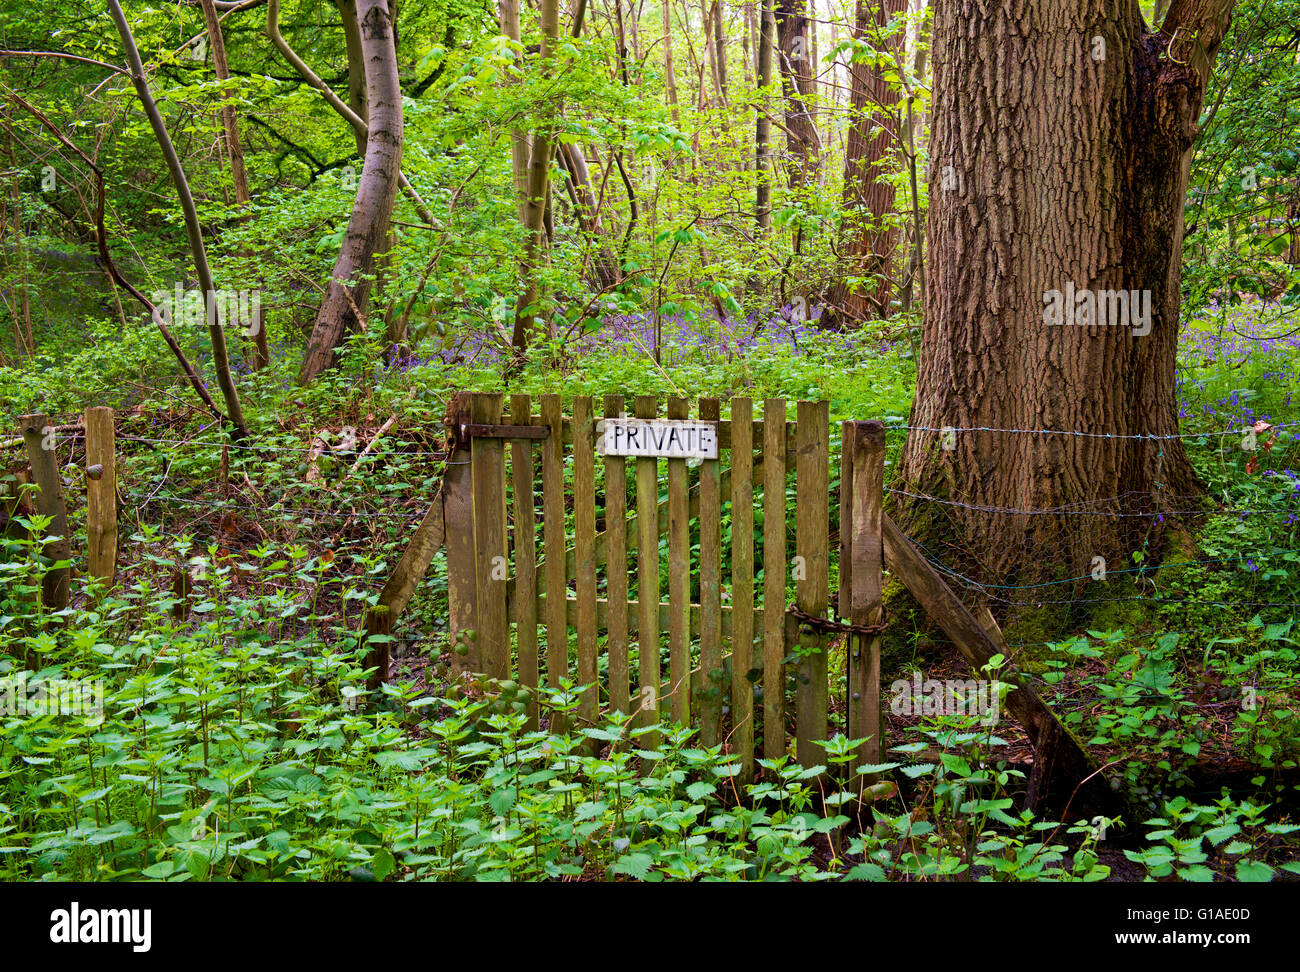 Segno privato sul cancello in legno di Blakes, nei pressi di Danbury, Essex, Inghilterra, Regno Unito Foto Stock